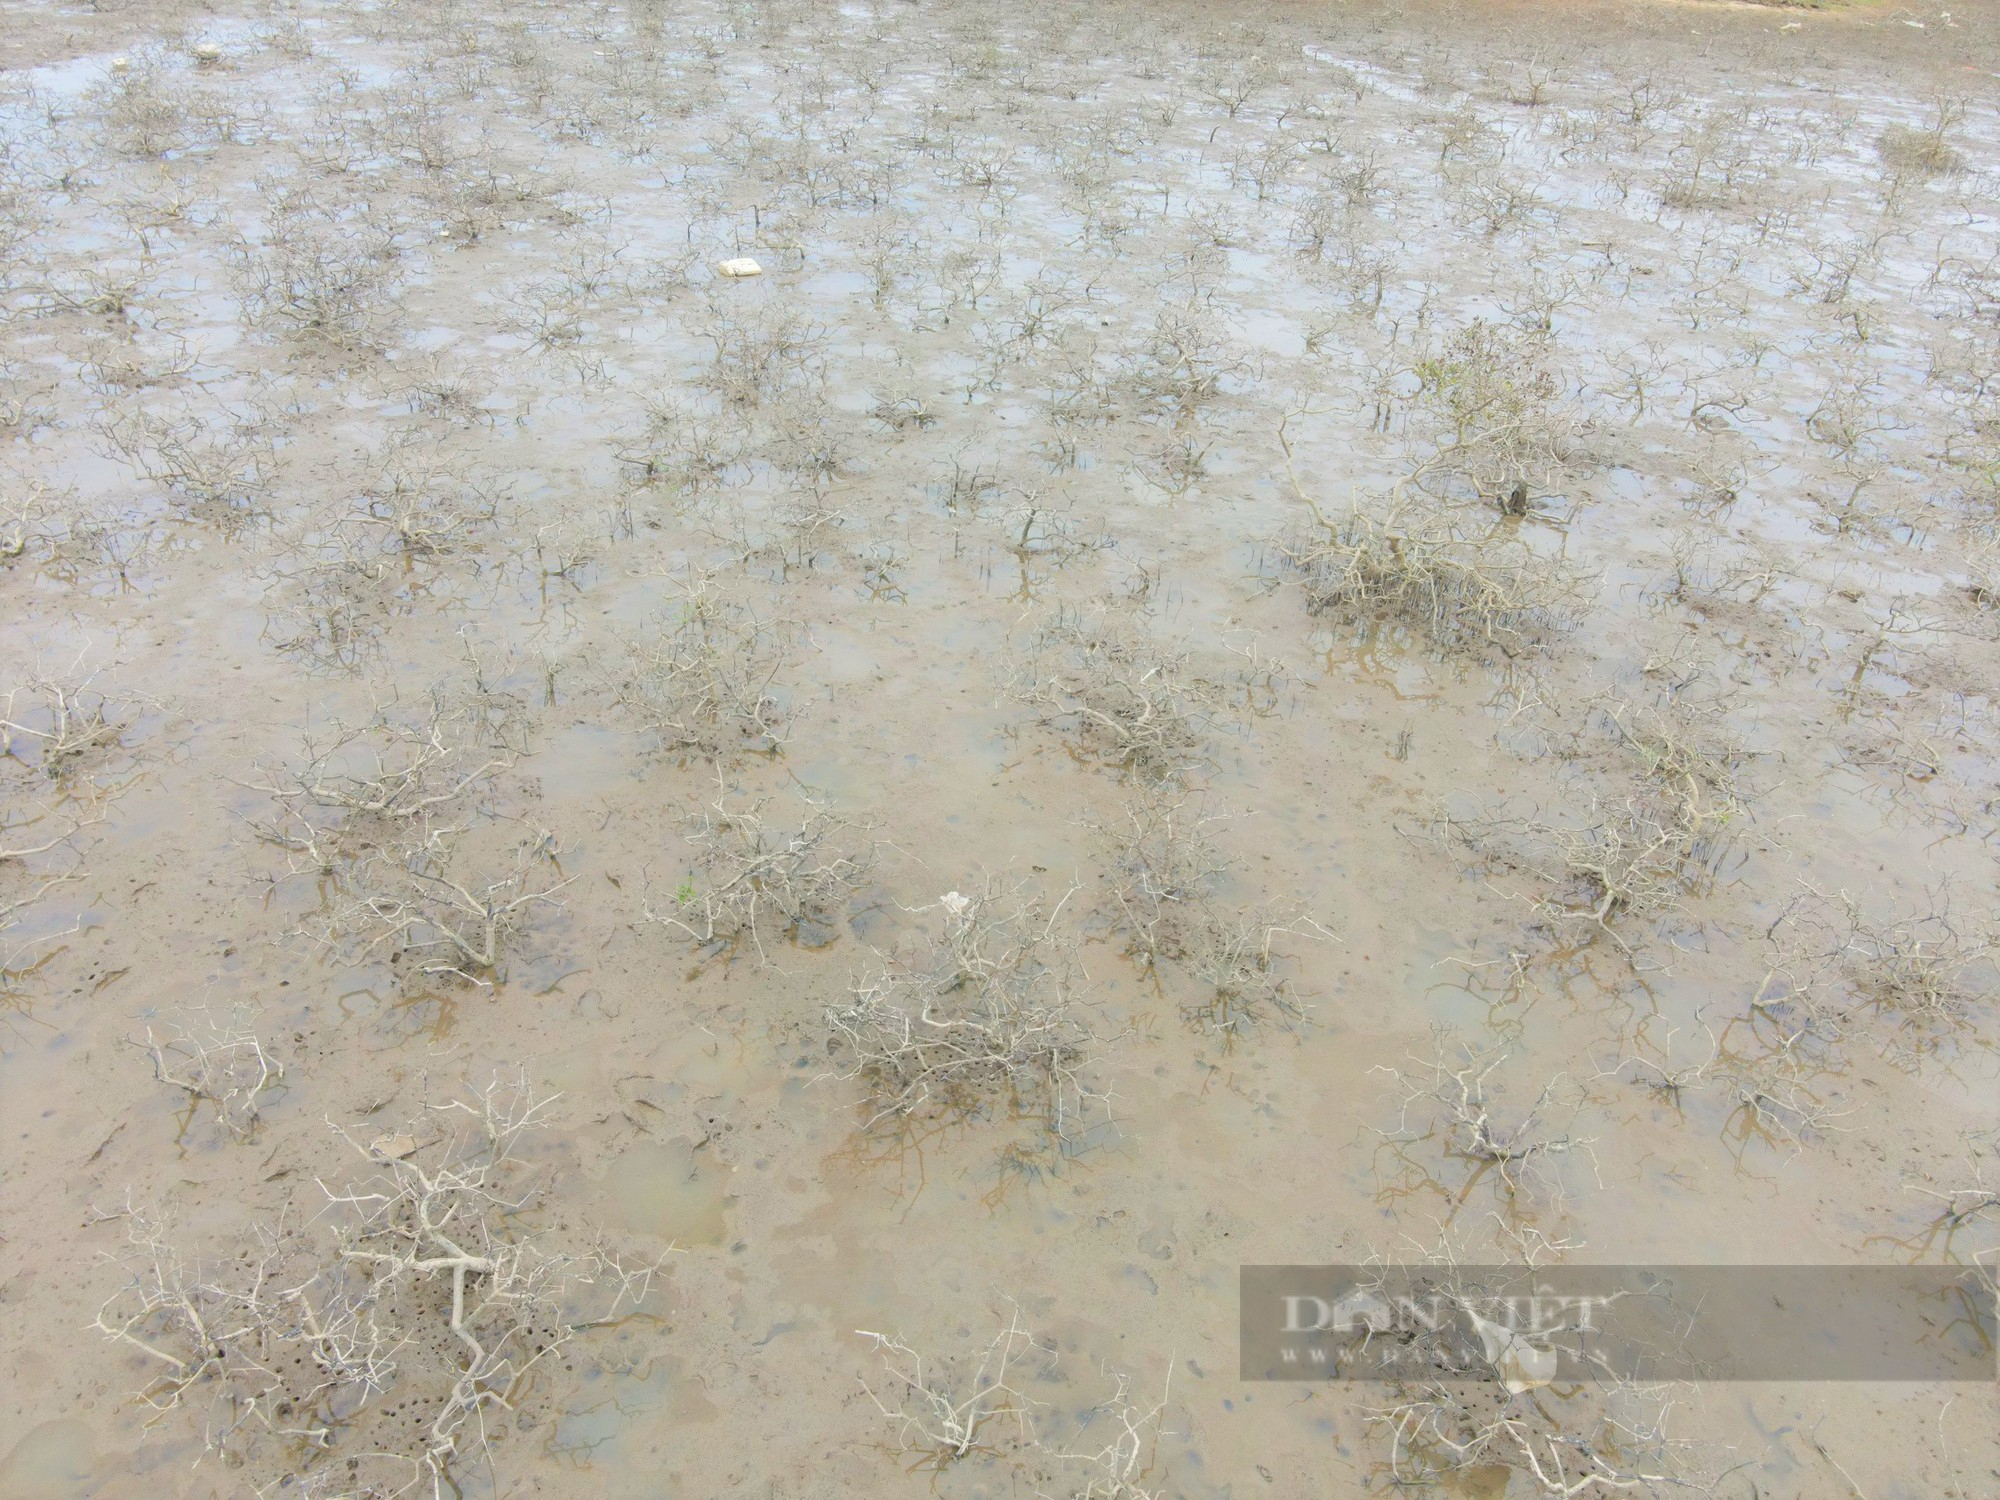 Hàng chục ha rừng ngập mặn tại Hà Tĩnh chết khô không rõ nguyên nhân - Ảnh 5.